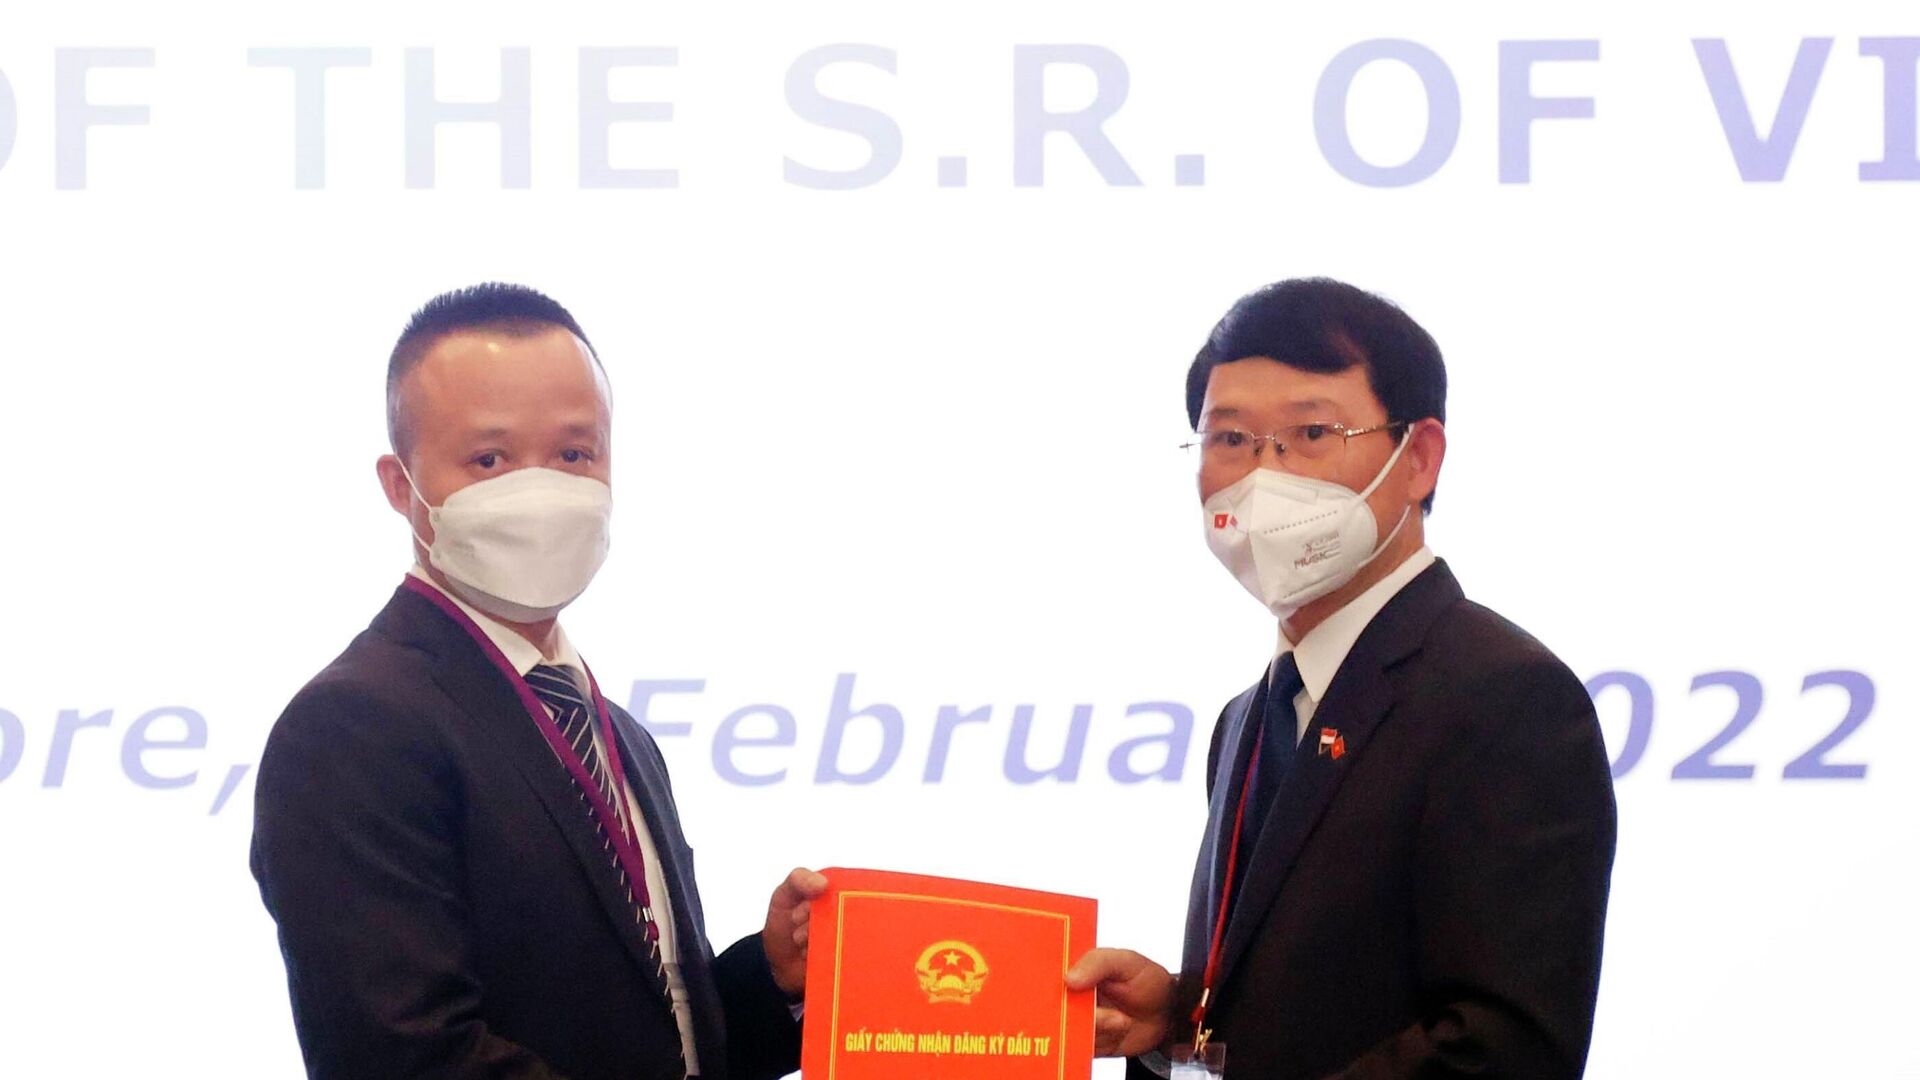 Chủ tịch UBND tỉnh Bắc Giang Lê Ánh Dương (bên phải) trao Giấy chứng nhận đăng ký đầu tư vào tỉnh Bắc Giang cho nhà đầu tư Singapore - Sputnik Việt Nam, 1920, 28.02.2022